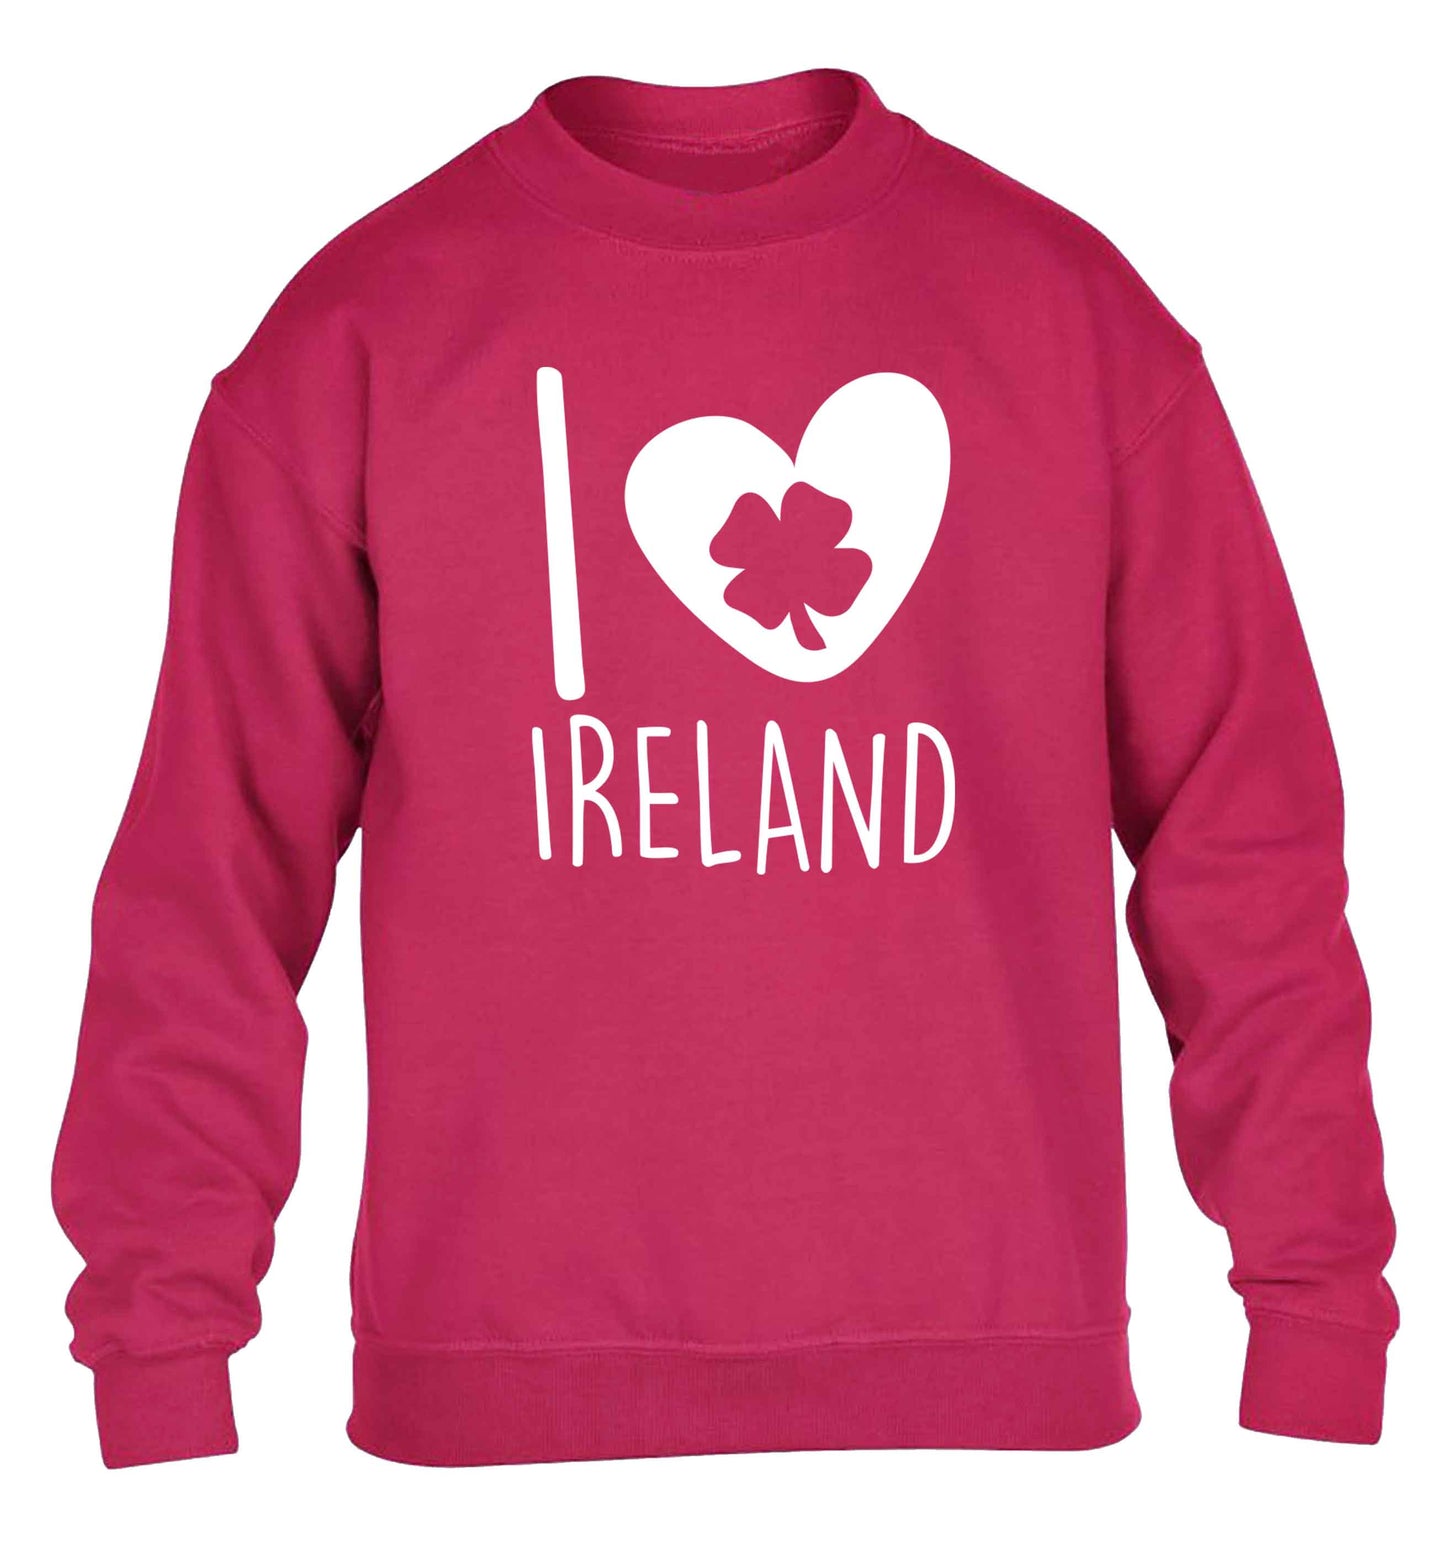 I love Ireland children's pink sweater 12-13 Years